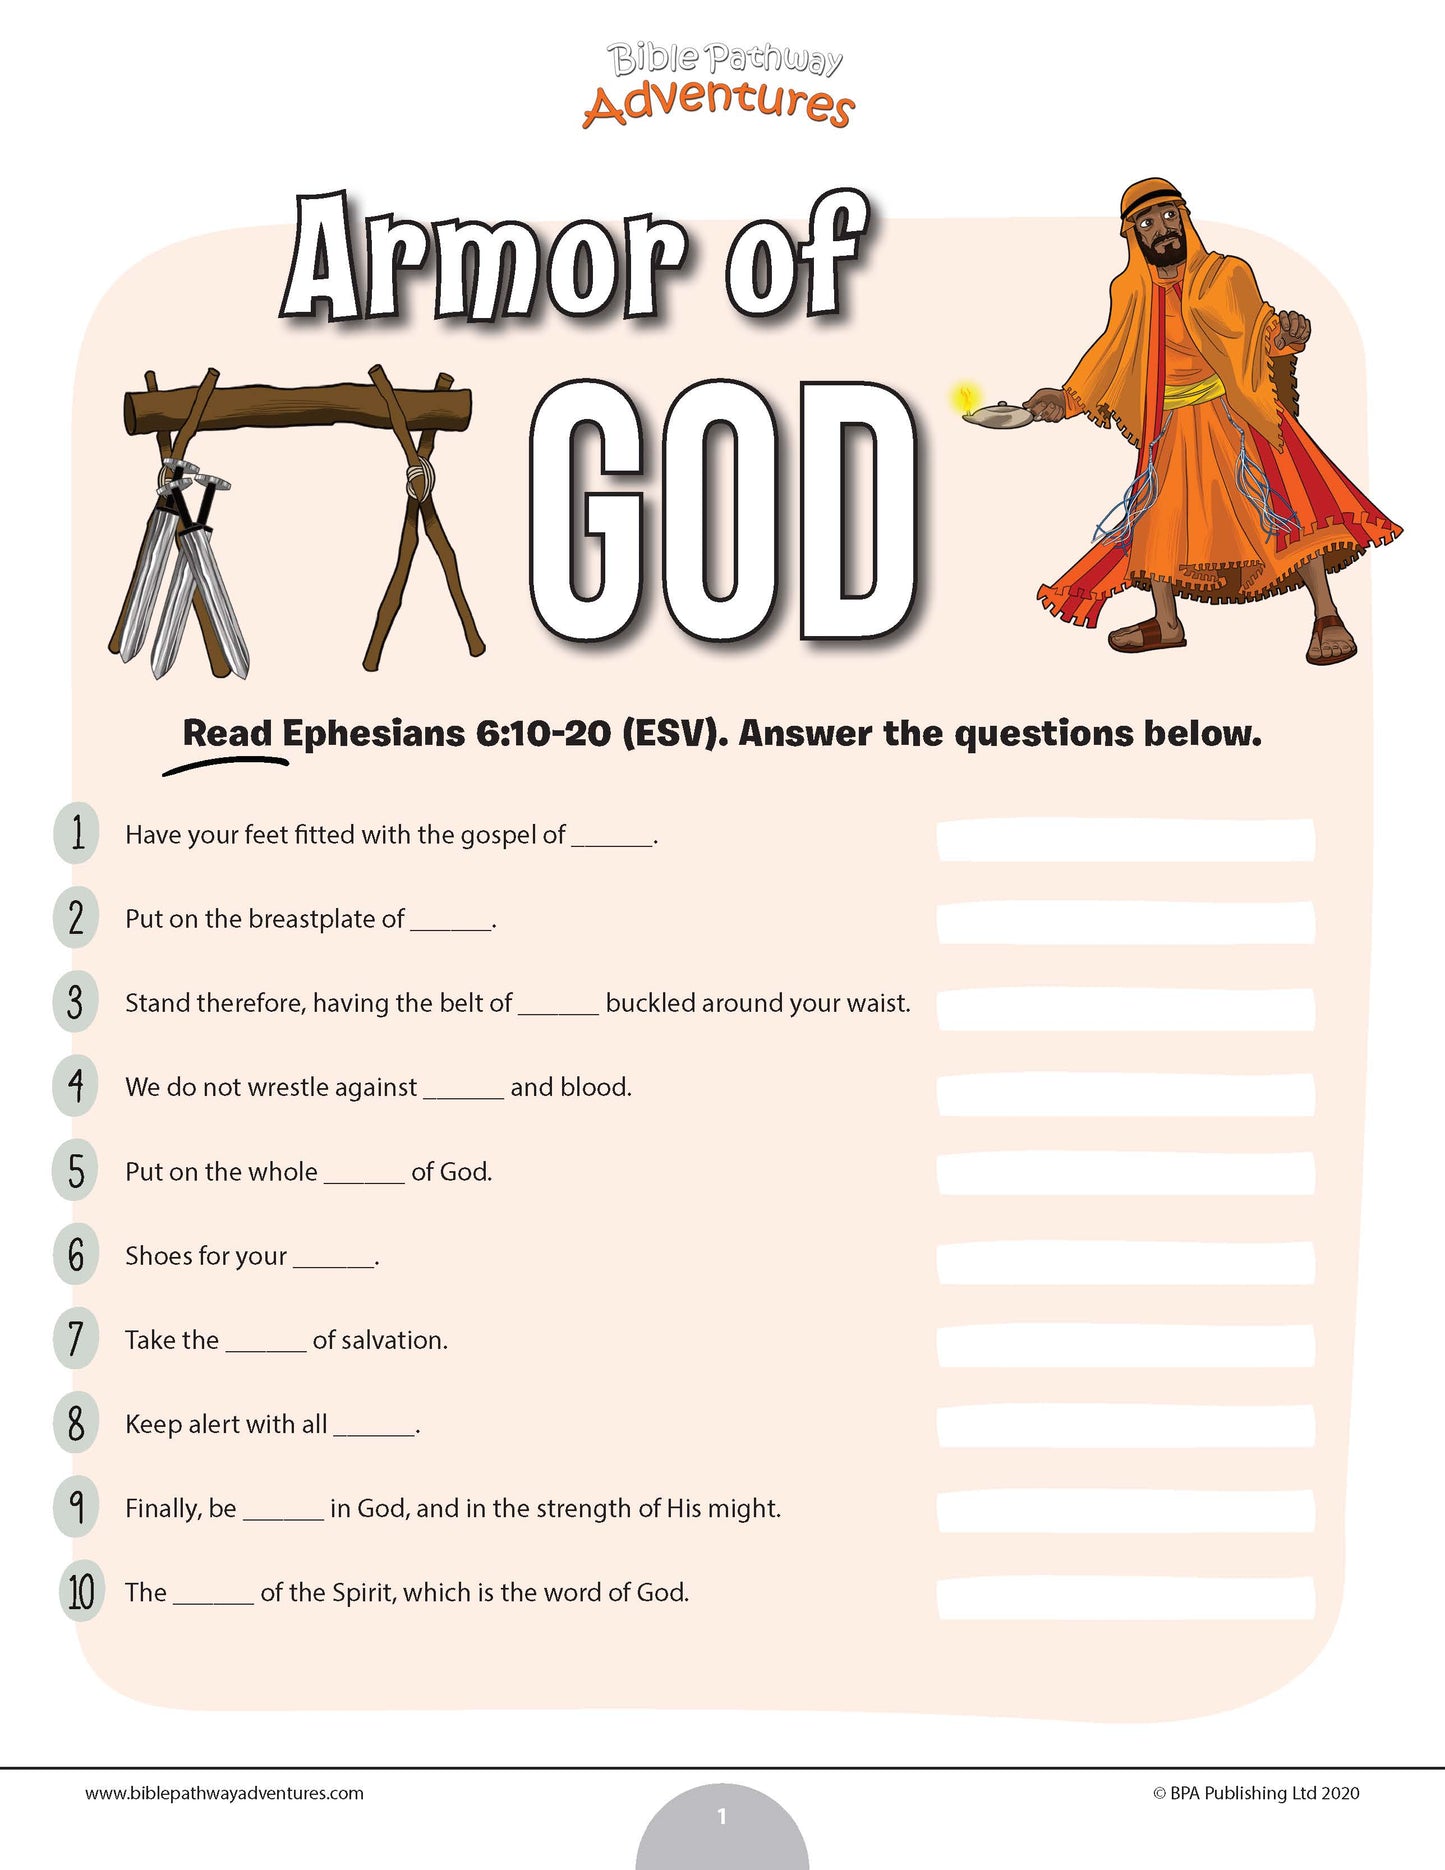 Prueba de la armadura de Dios